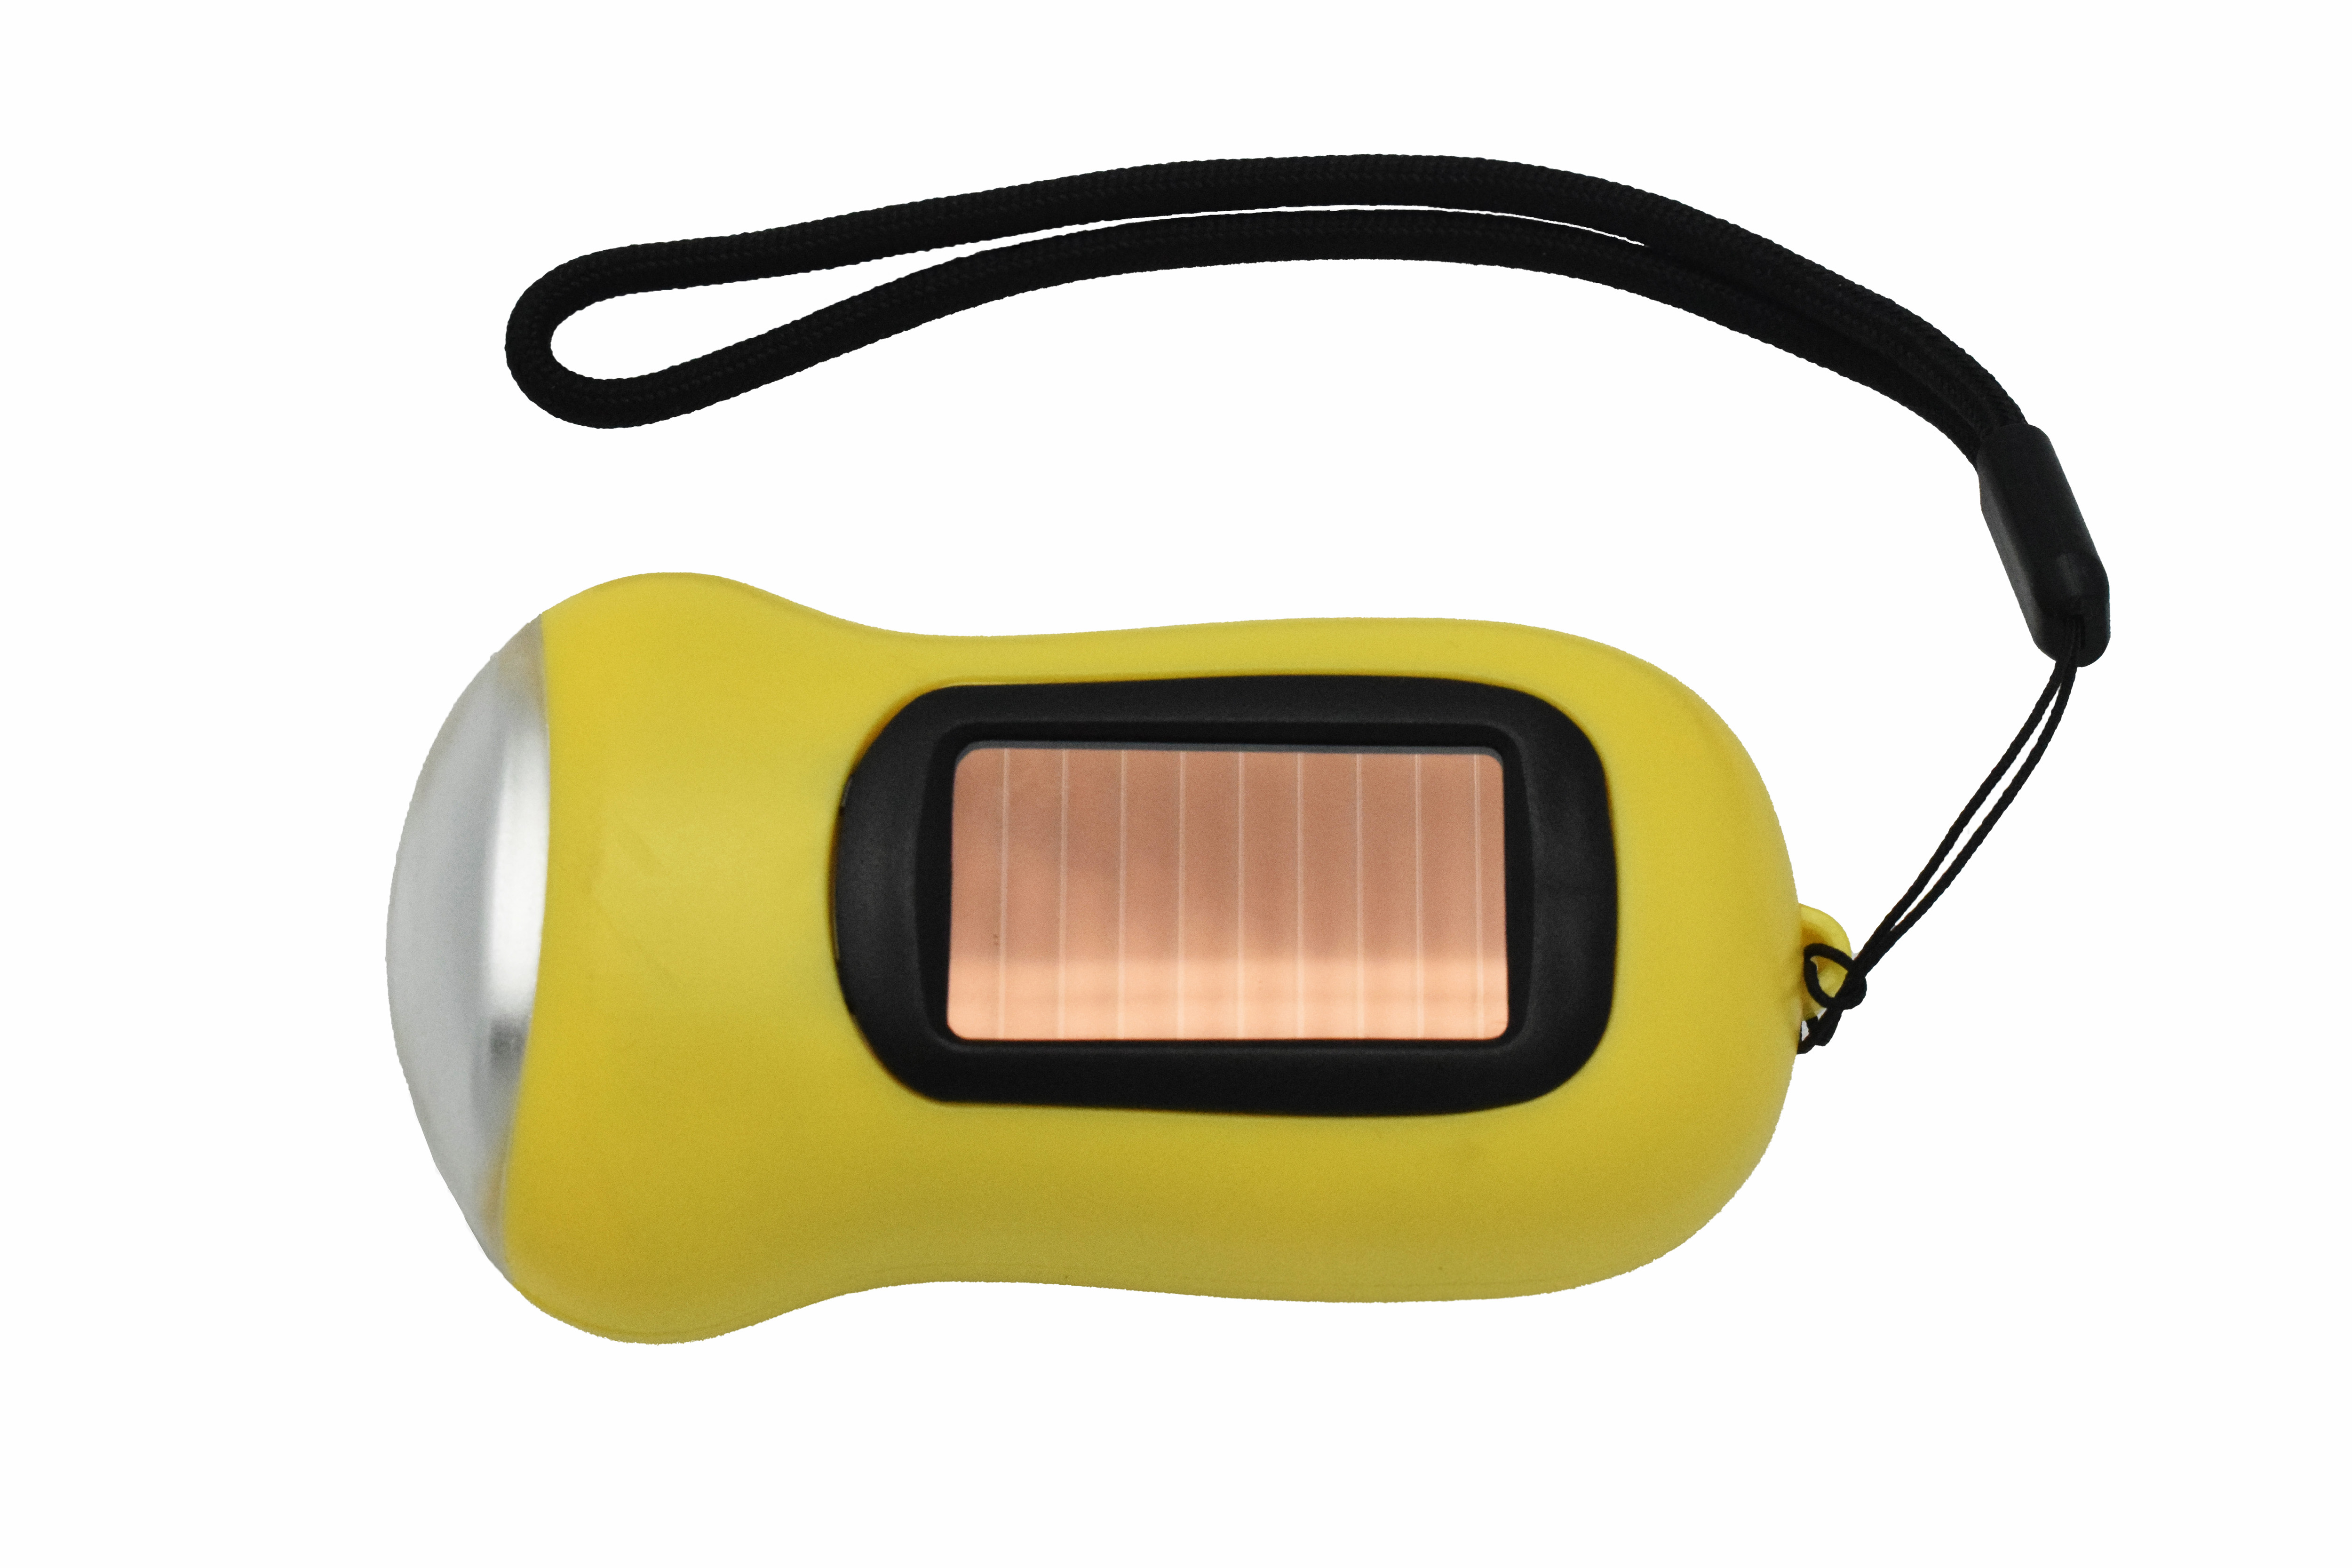 Solar and dynamo flashlight